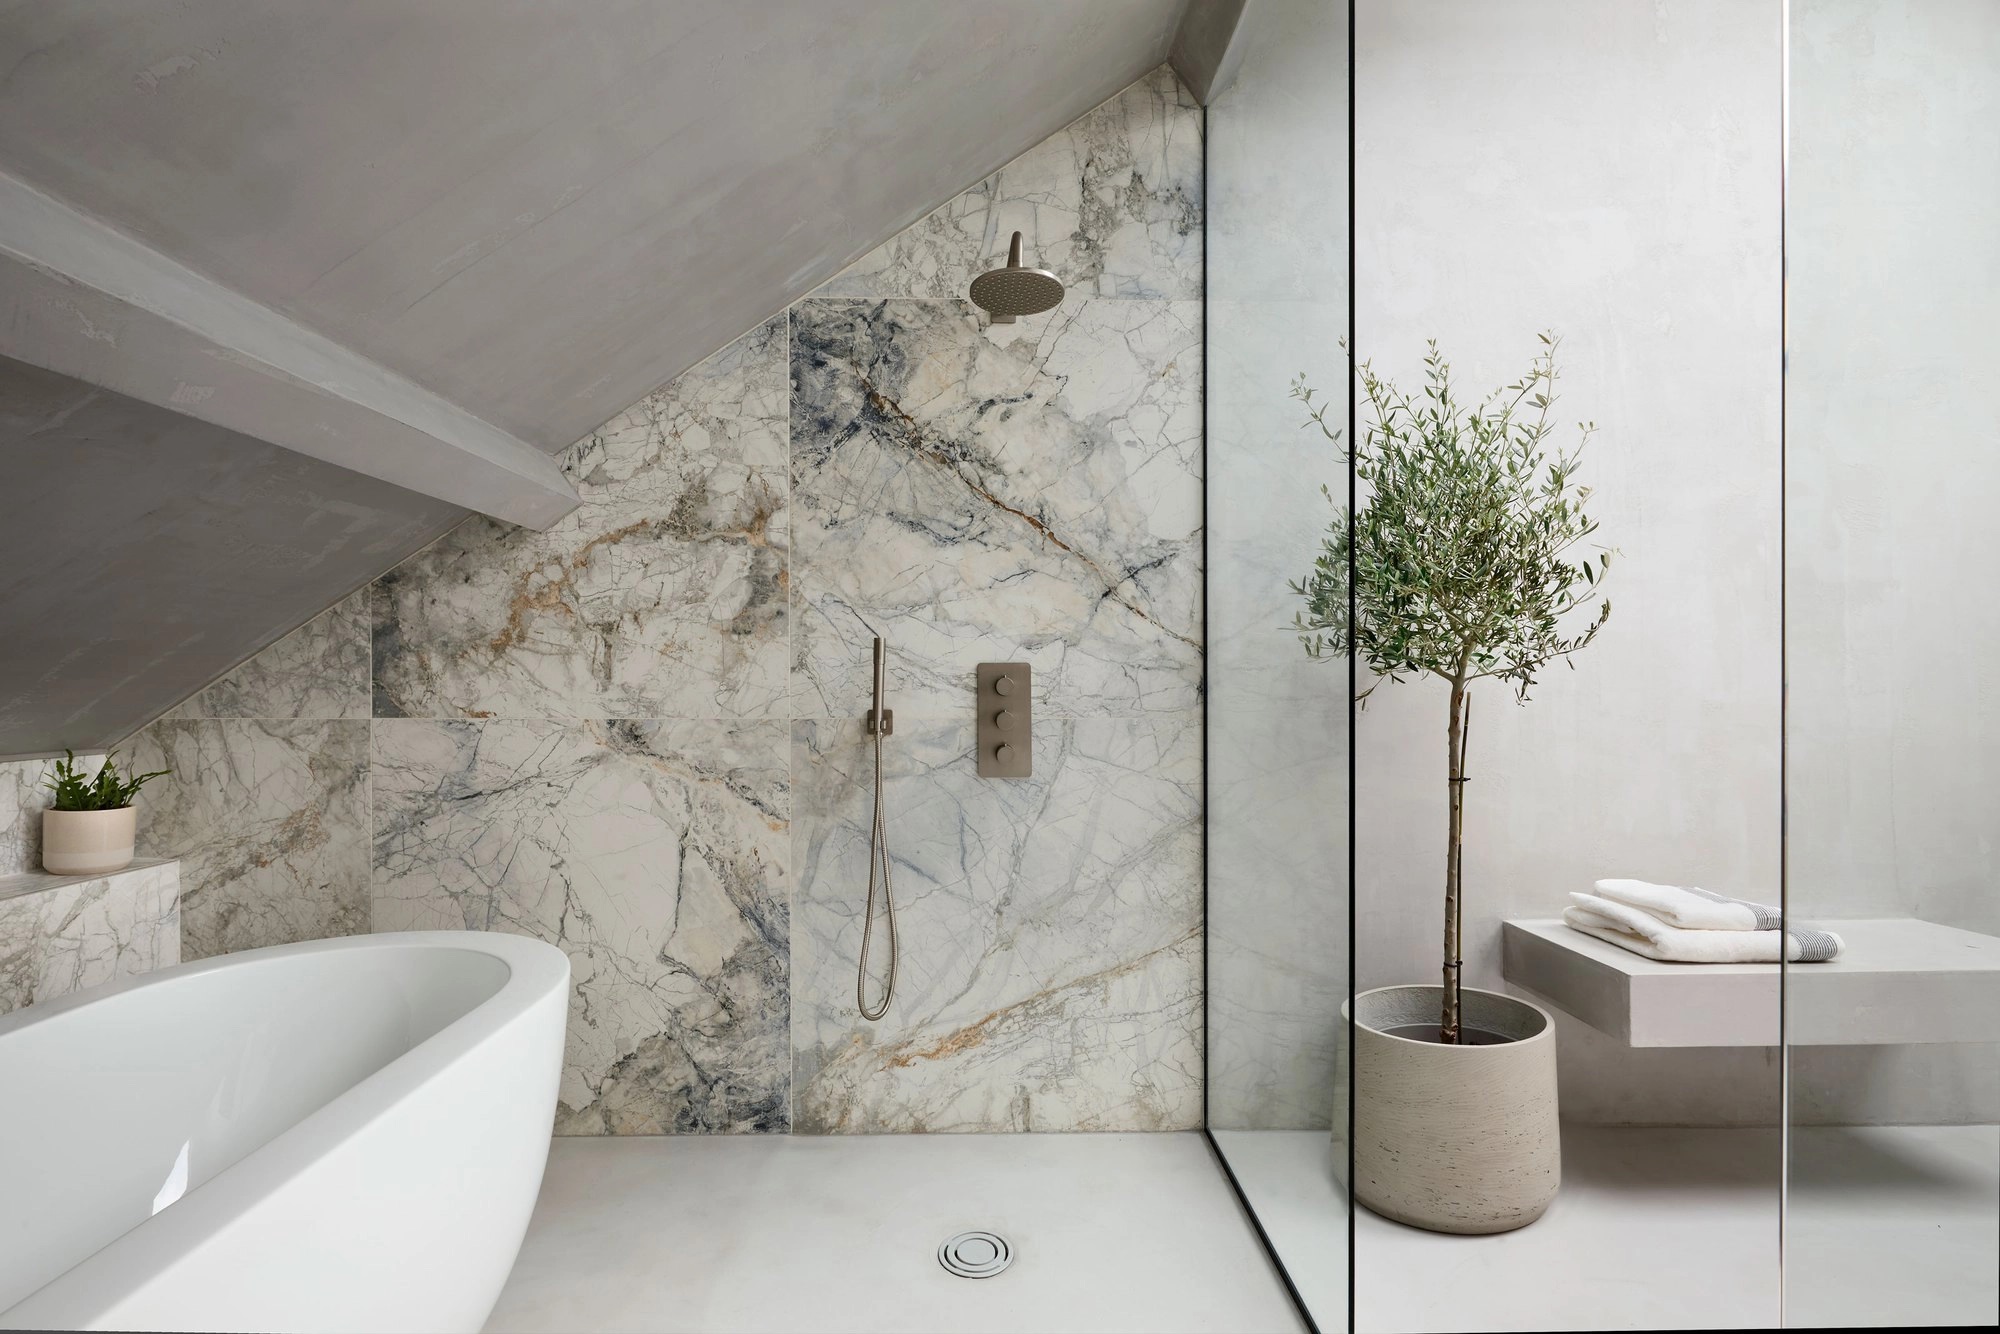 Trang trí với màu xám than: Lót sàn phòng tắm của bạn bằng gạch đá cẩm thạch sẫm màu